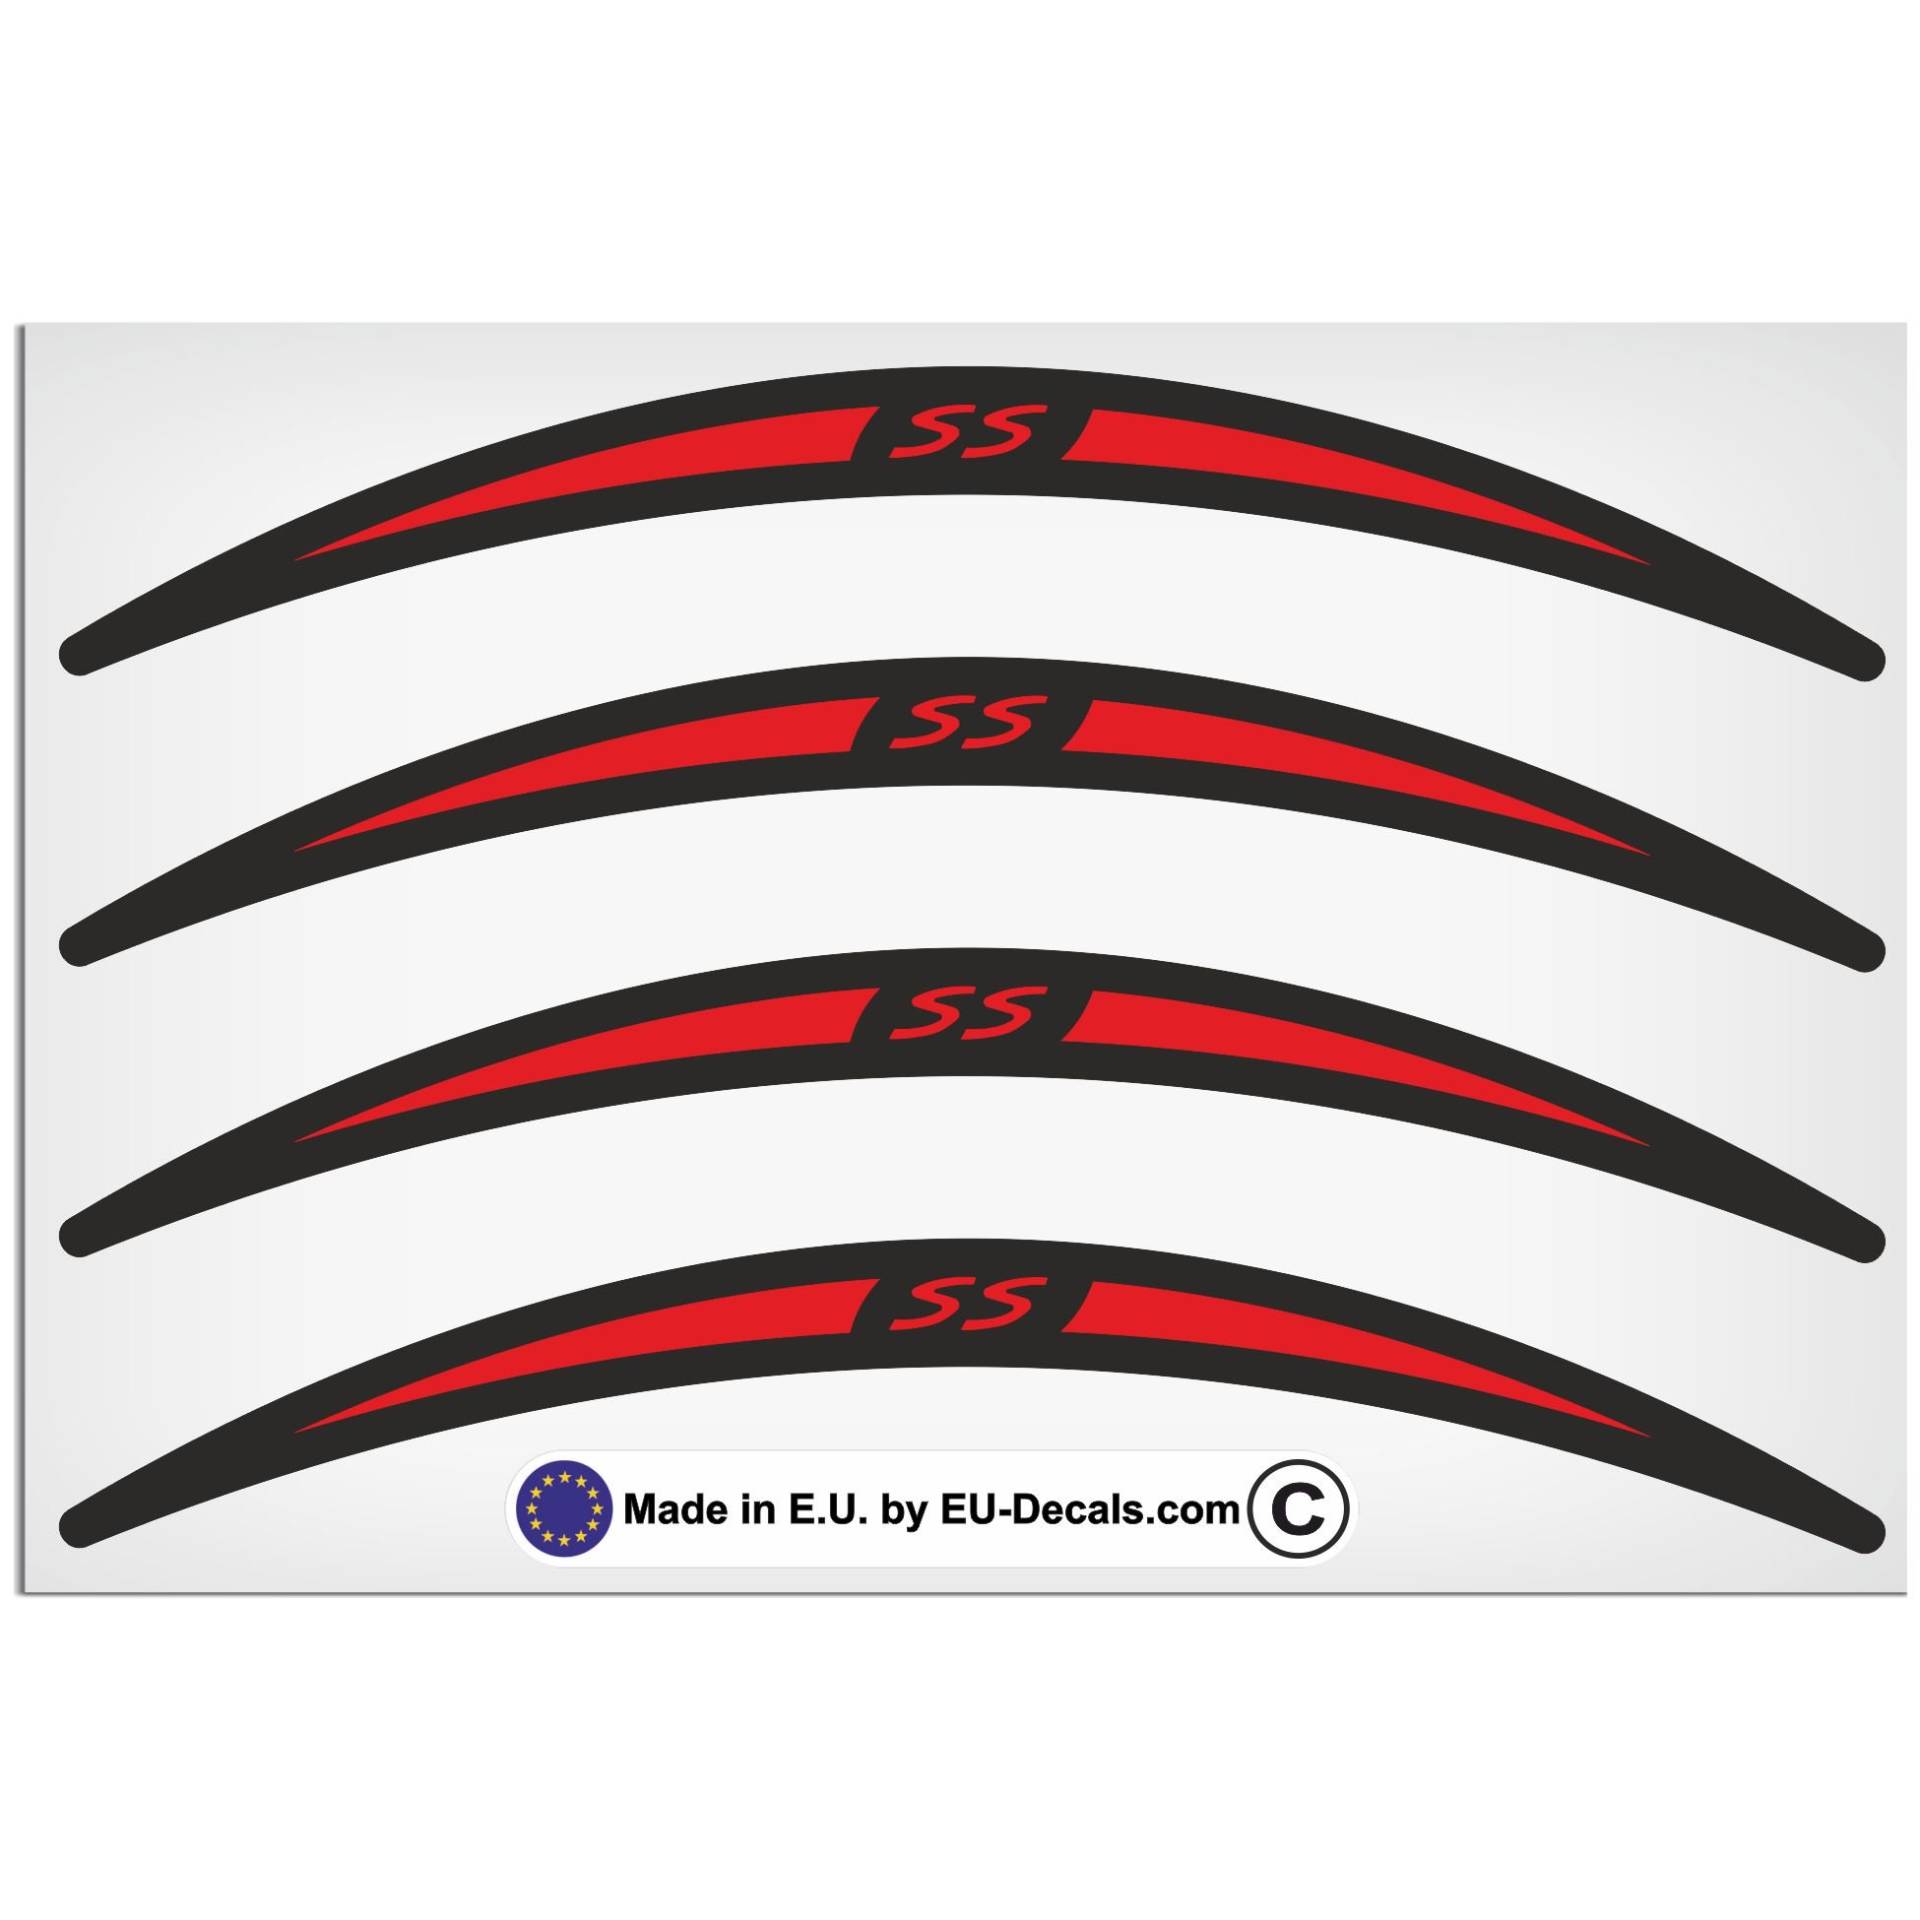 EU-Decals - MioVespa Collection SS 4X Felgenaufkleber lang rot auf schwarz für Vespa GTS 300 Super Sport Aufkleber laminiert von EU-Decals - MioVespa Collection